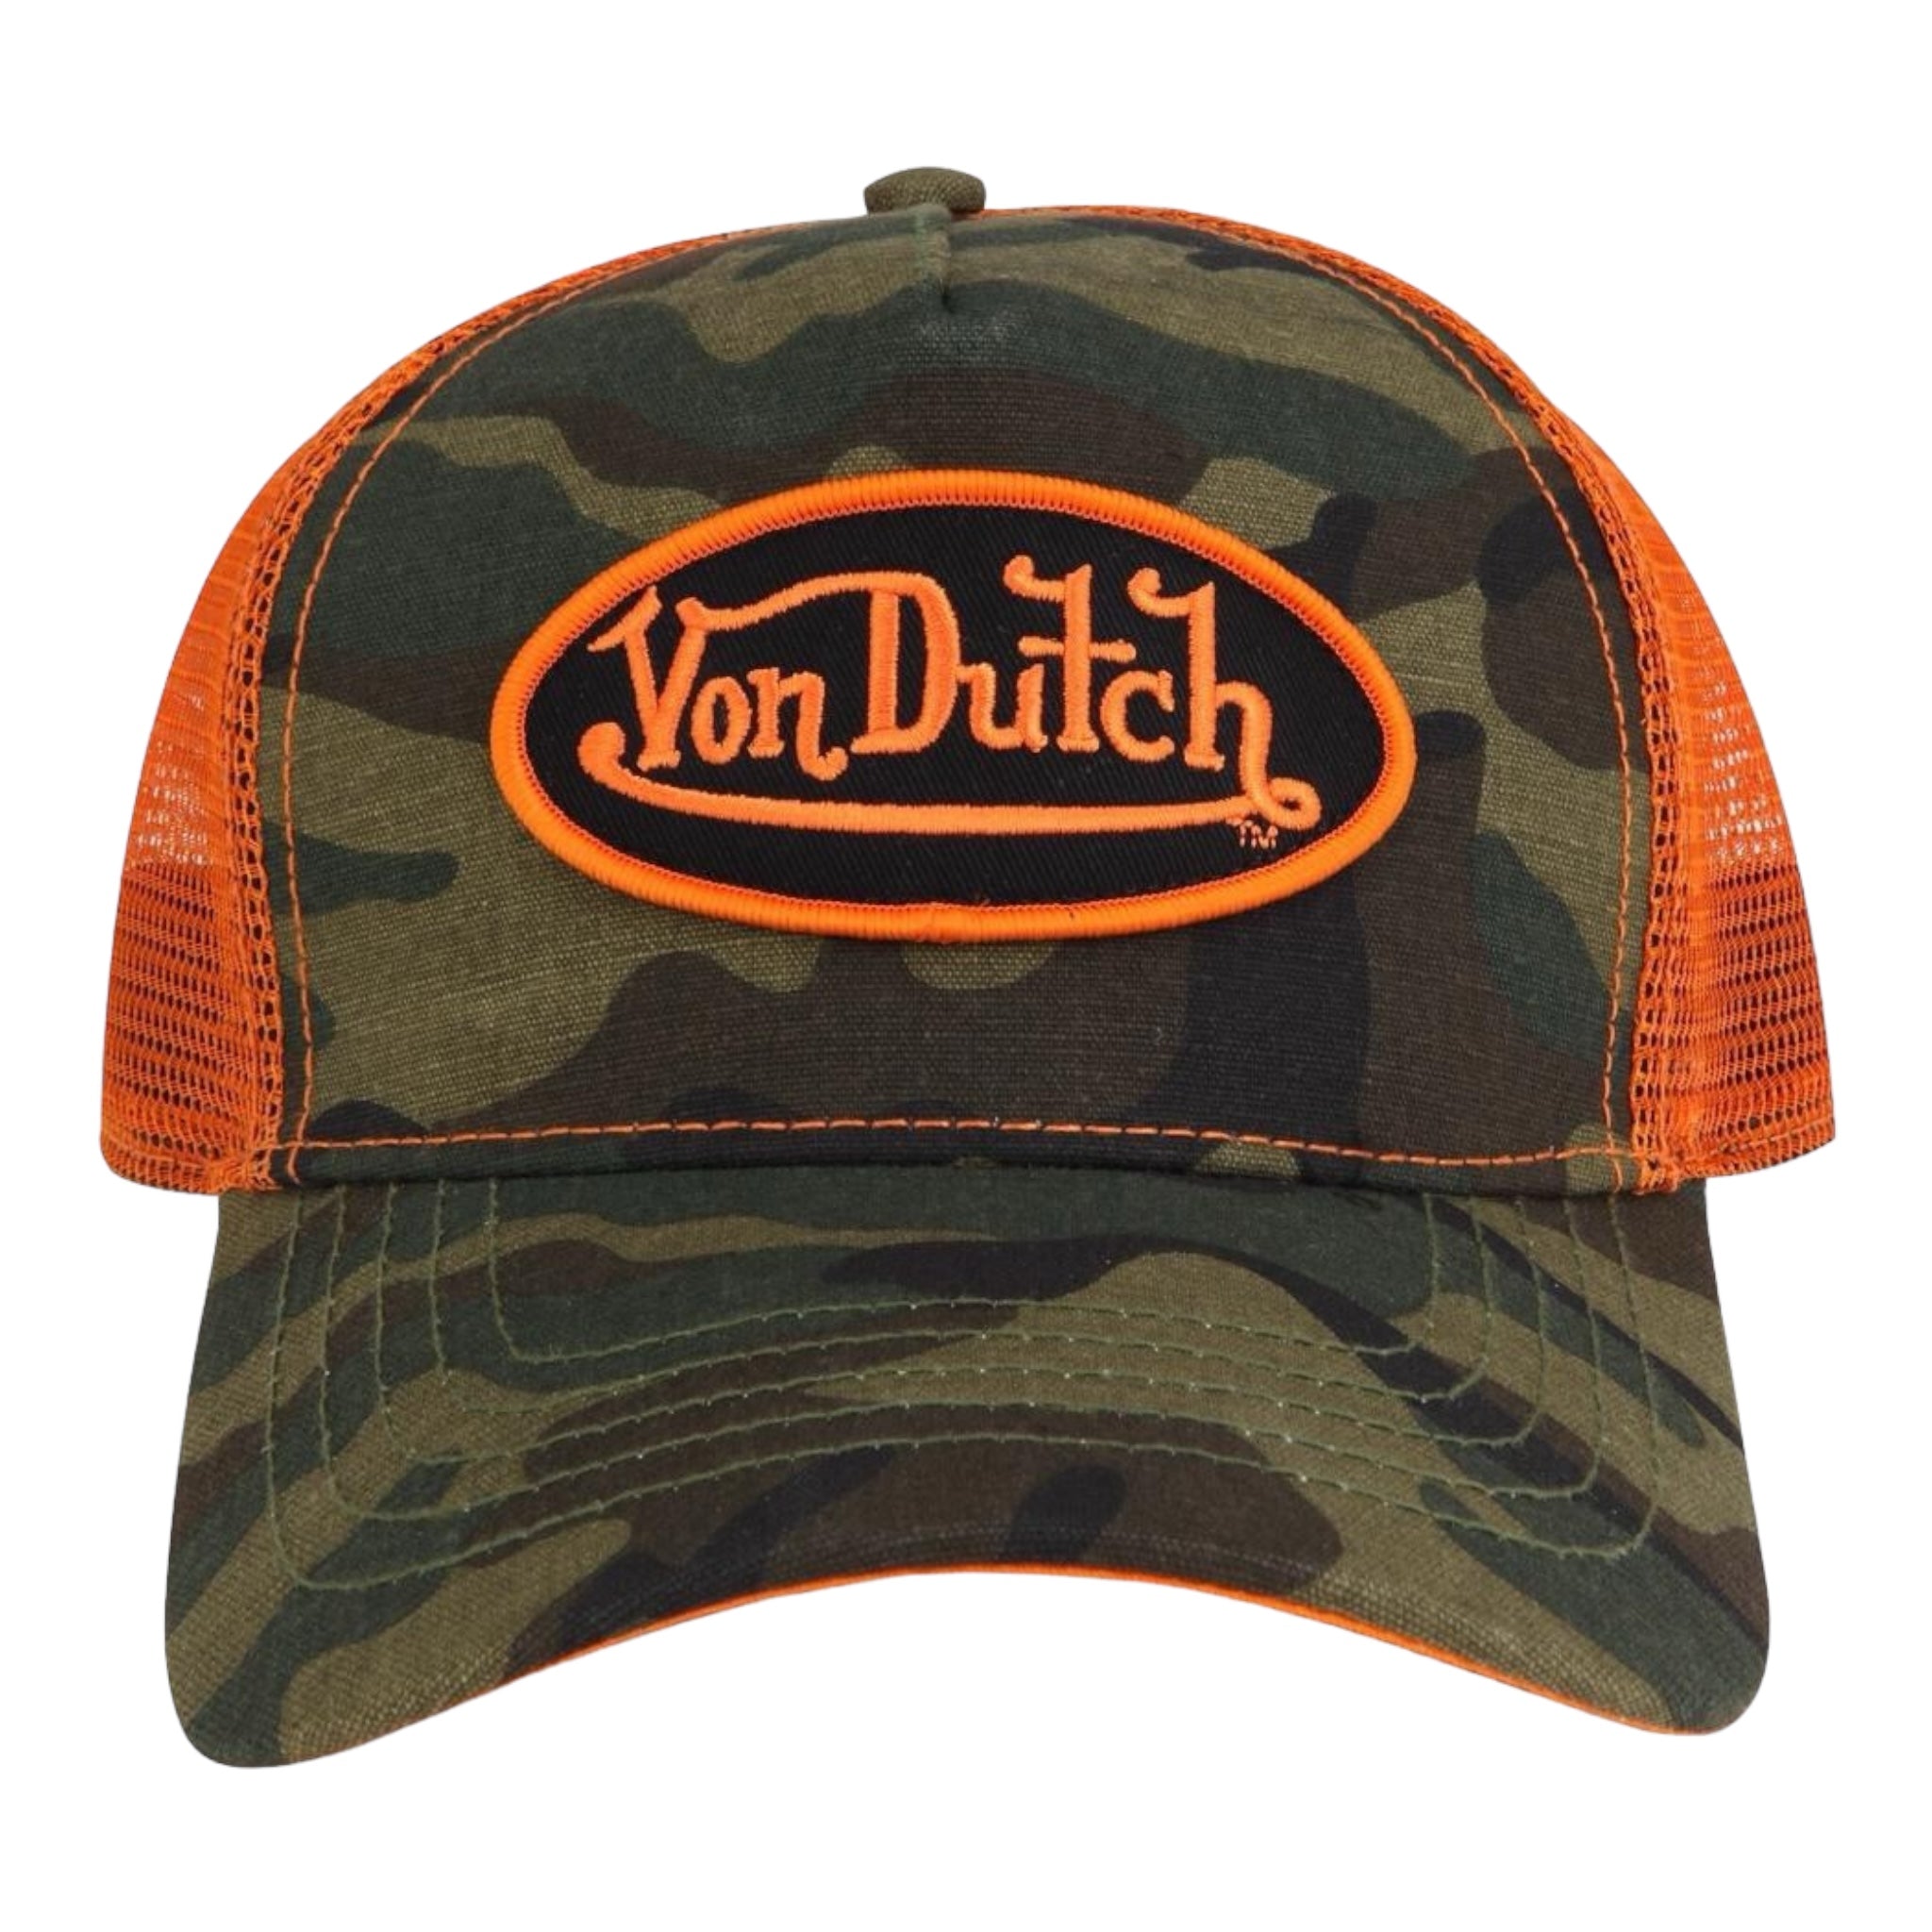 VON DUTCH: Classic Trucker